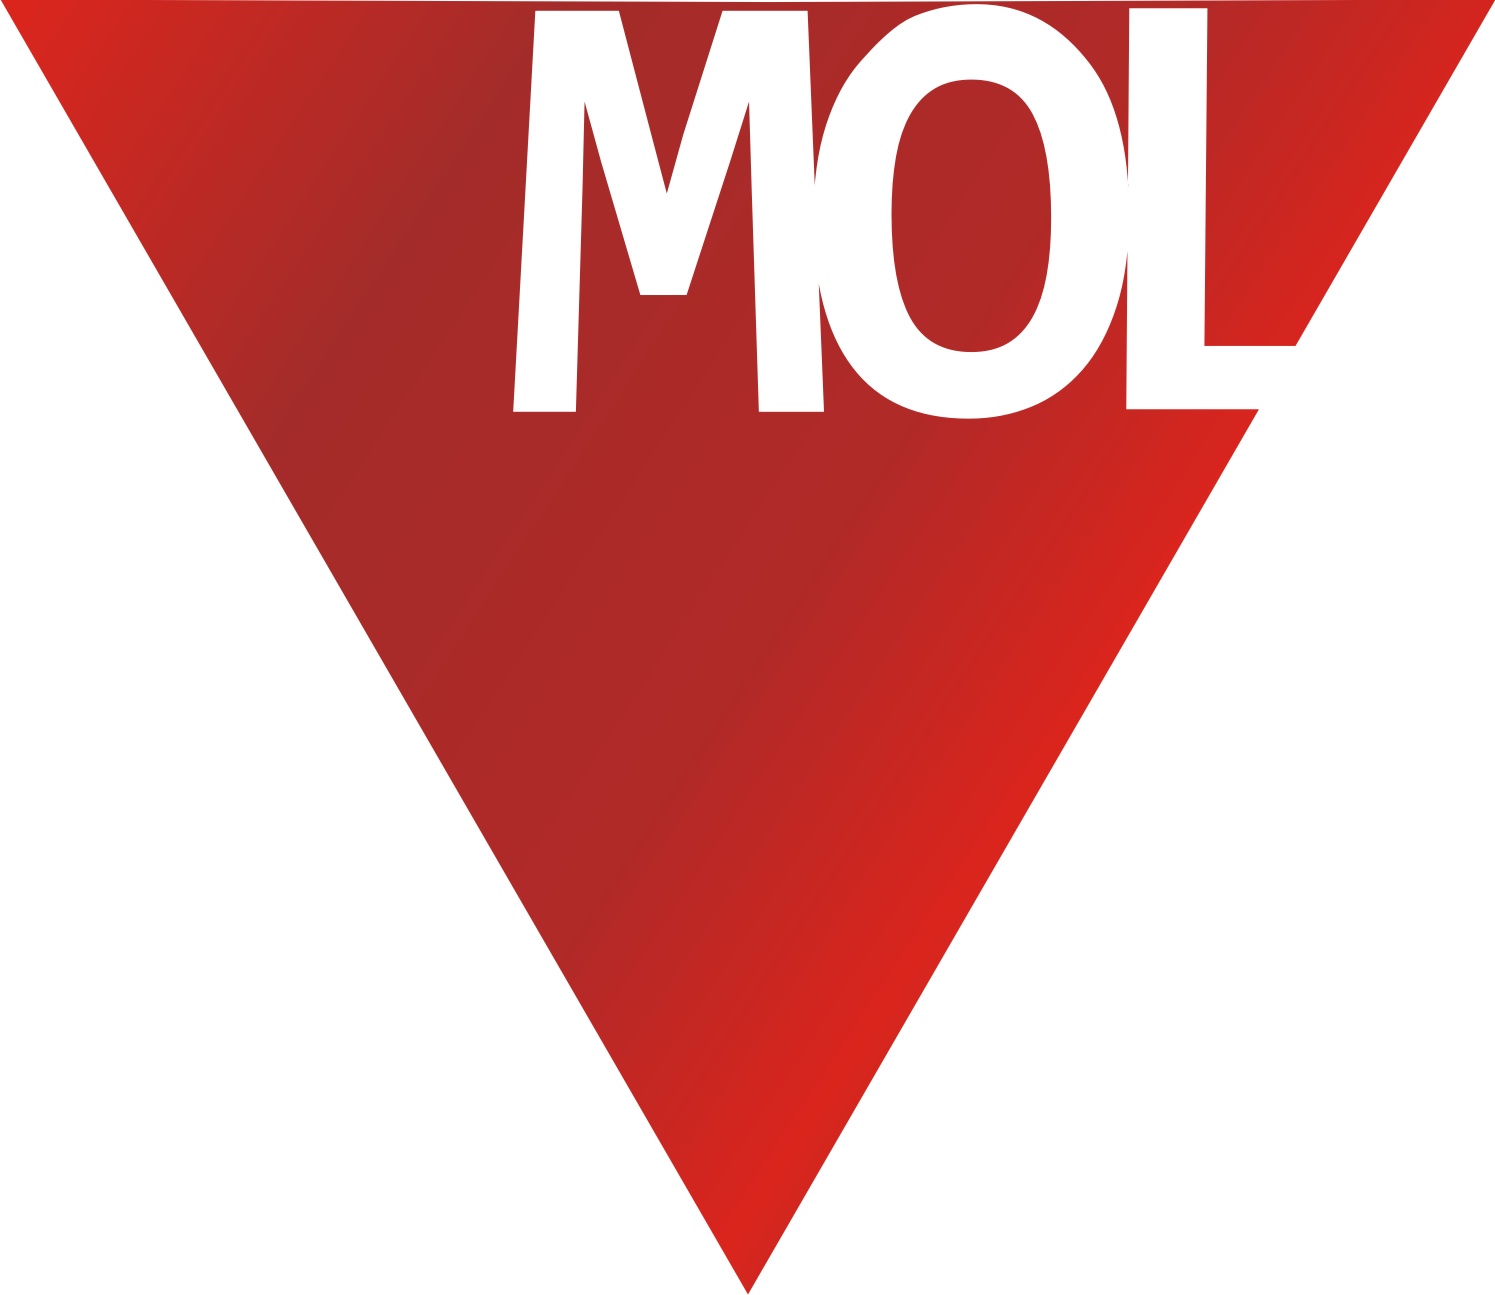 A Mol nyilvános vételi ajánlatot tett a TVK részvényekre